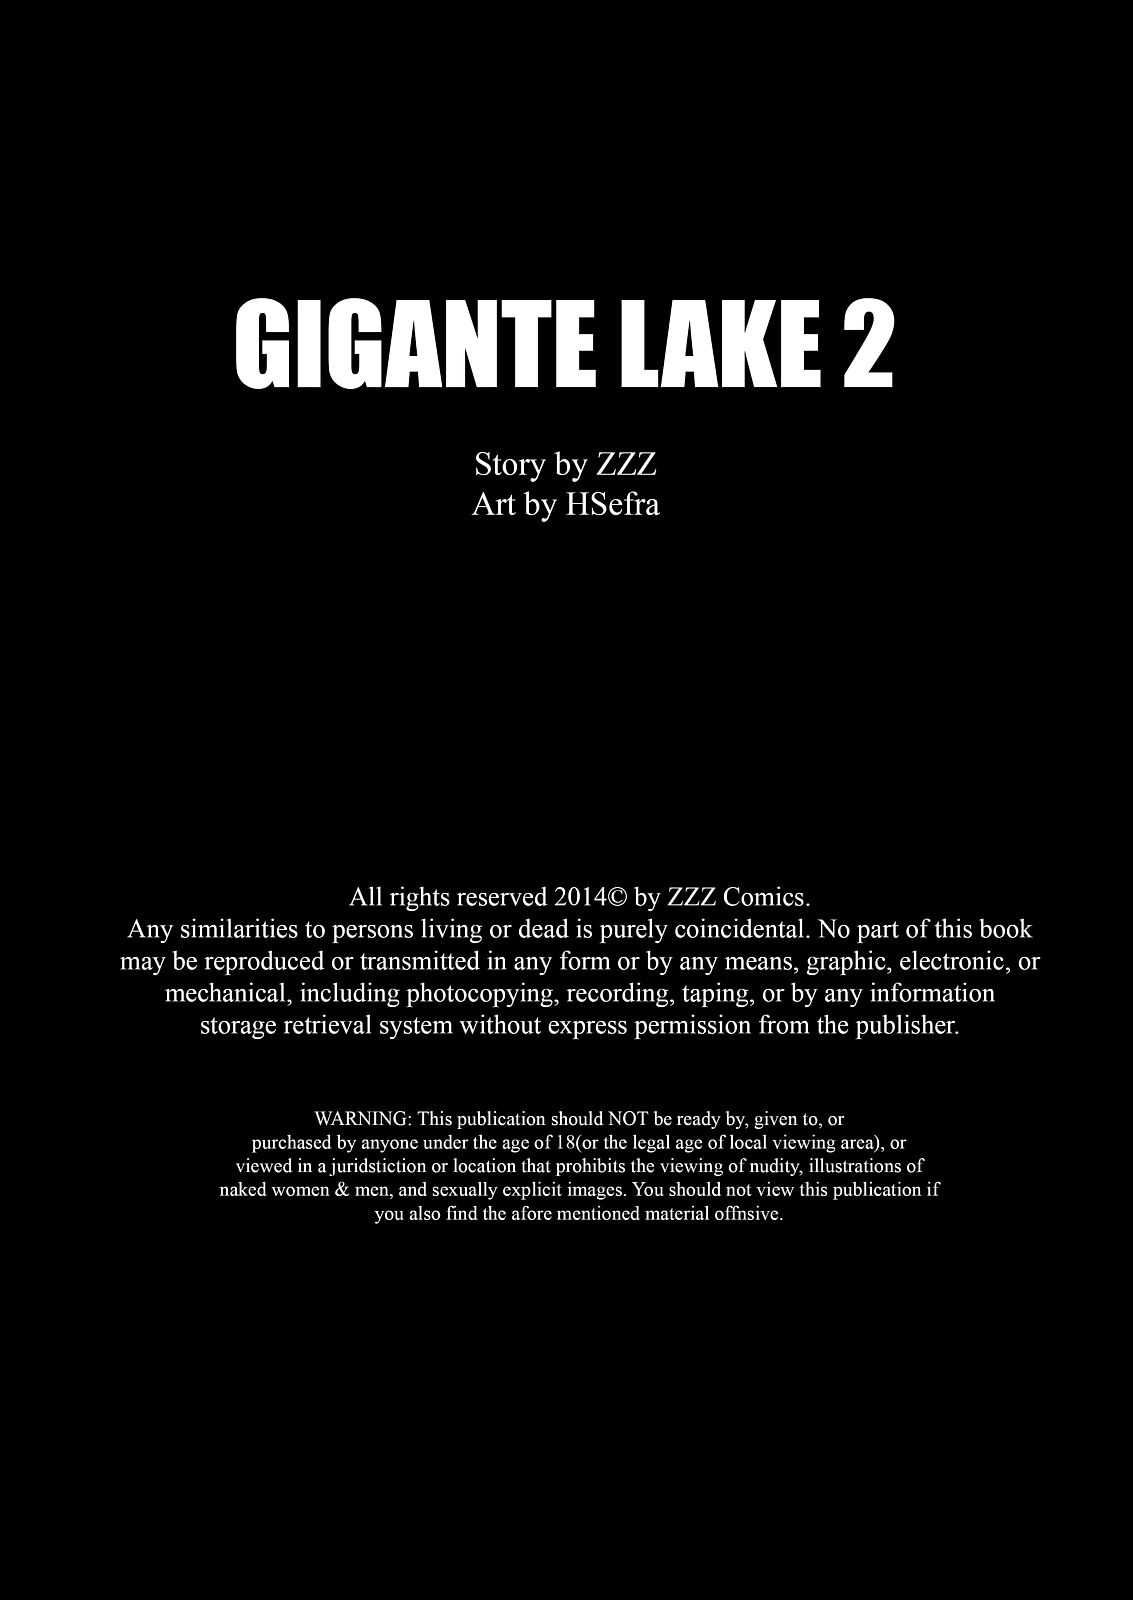 zzz gigante Lago parte 2